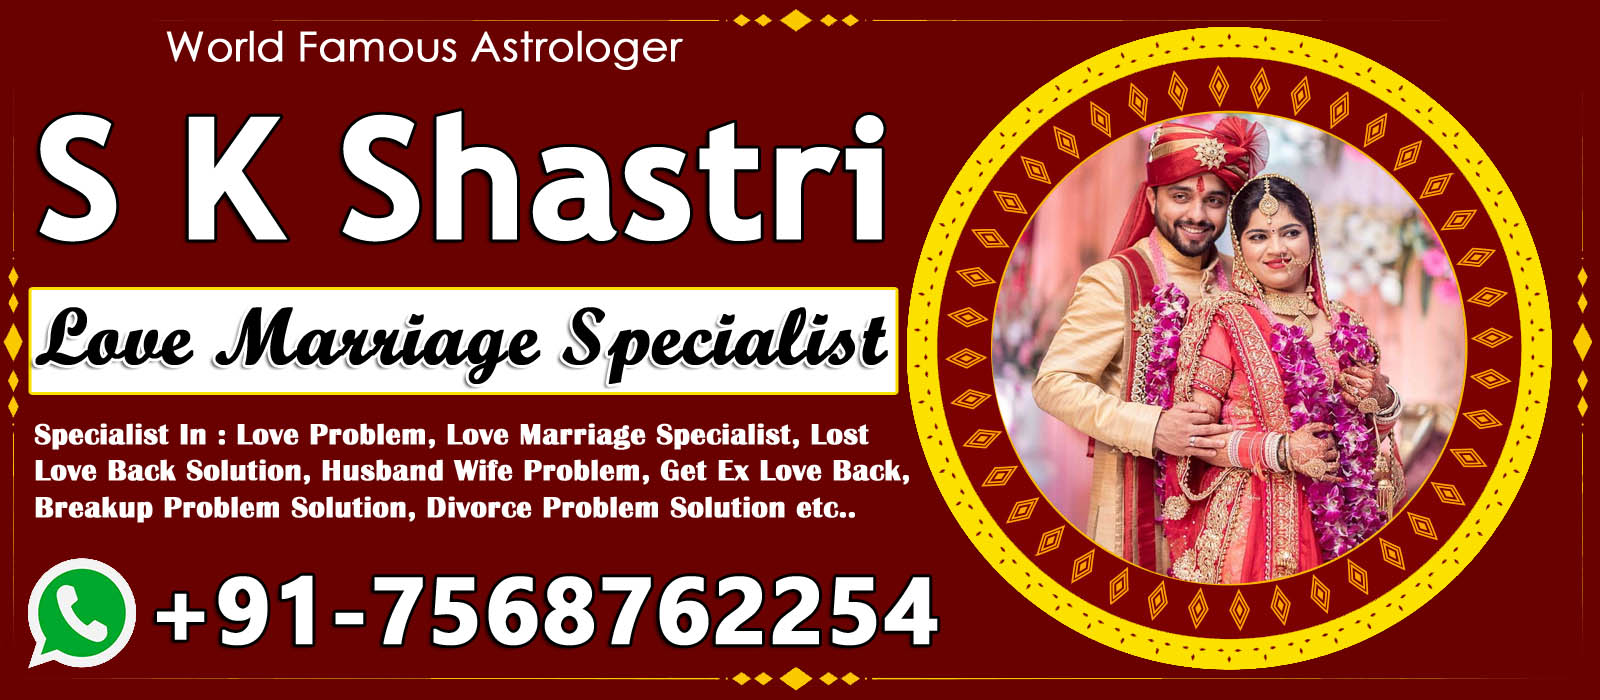 World Famous Astrologer S K Shastri Ji +91-7568762254